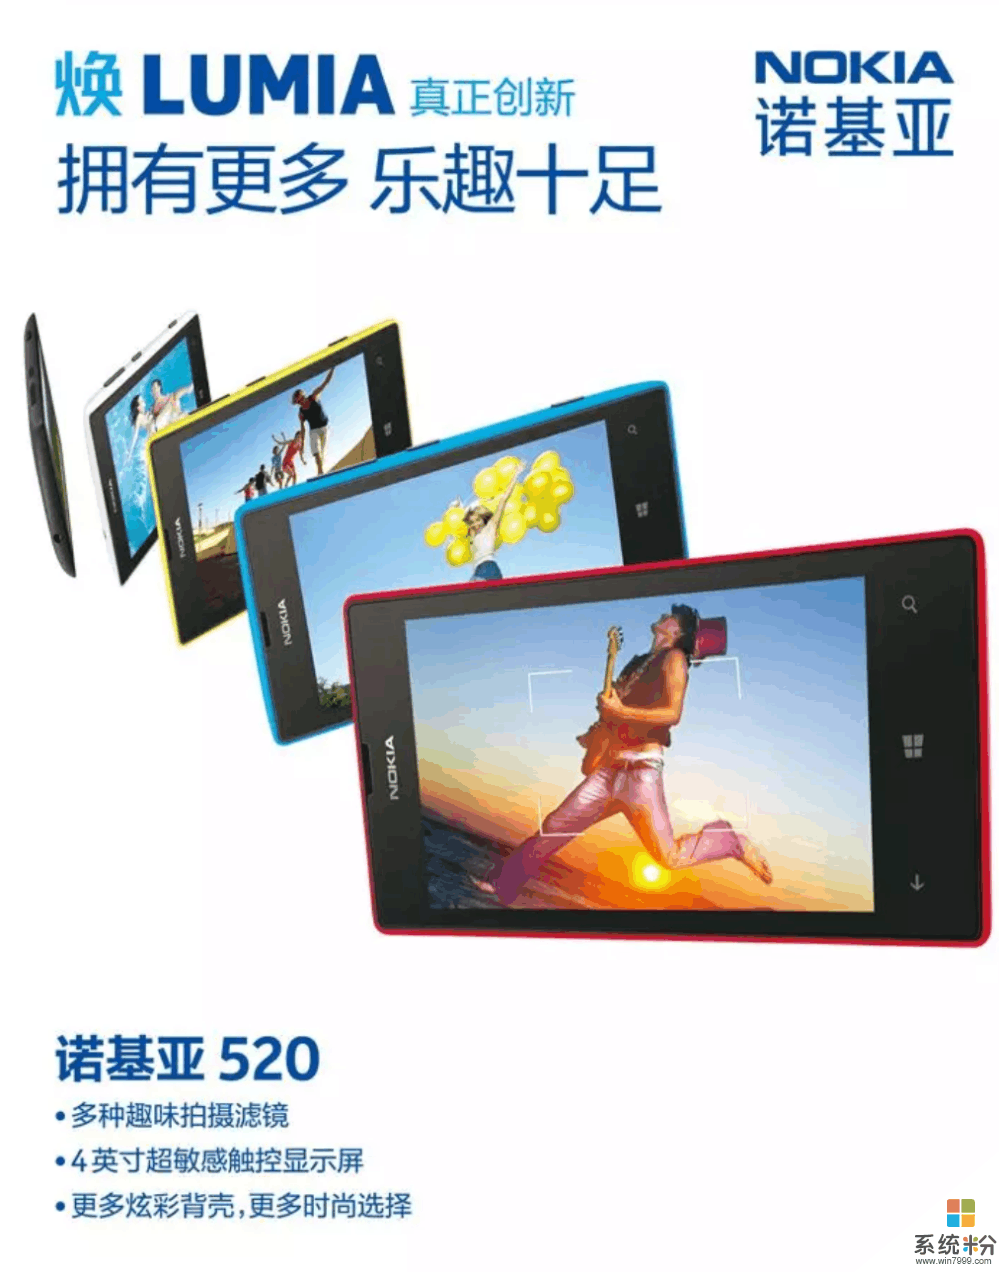 微軟大賣情懷: 諾基亞Lumia520T重新上市, 定位百元機 你願意買單嗎?(2)